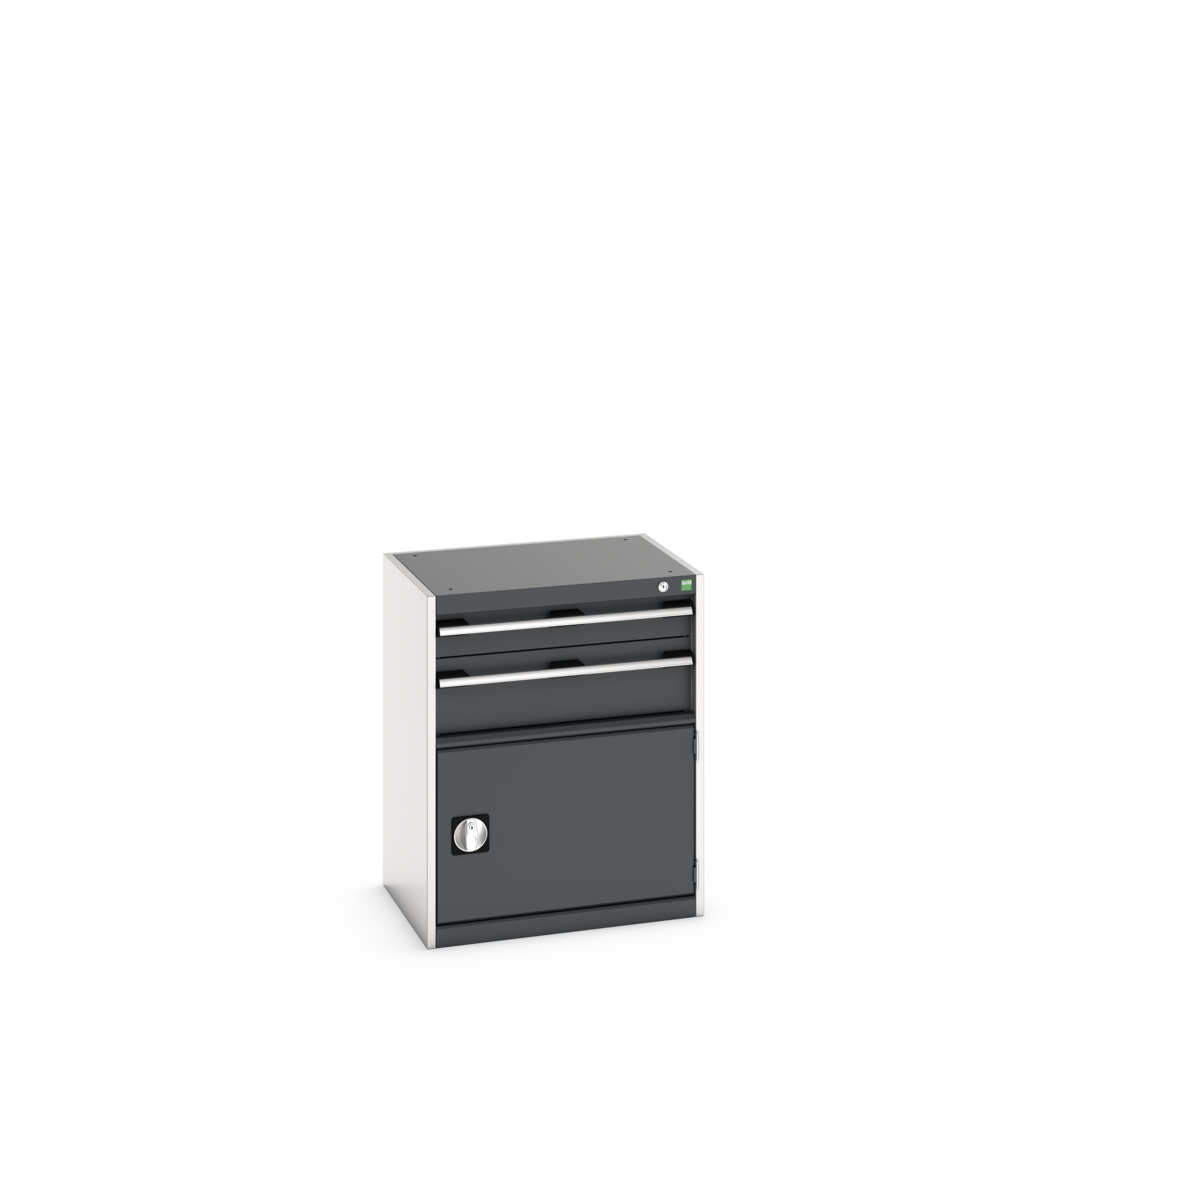 40011044. - cubio drawer-door cabinet